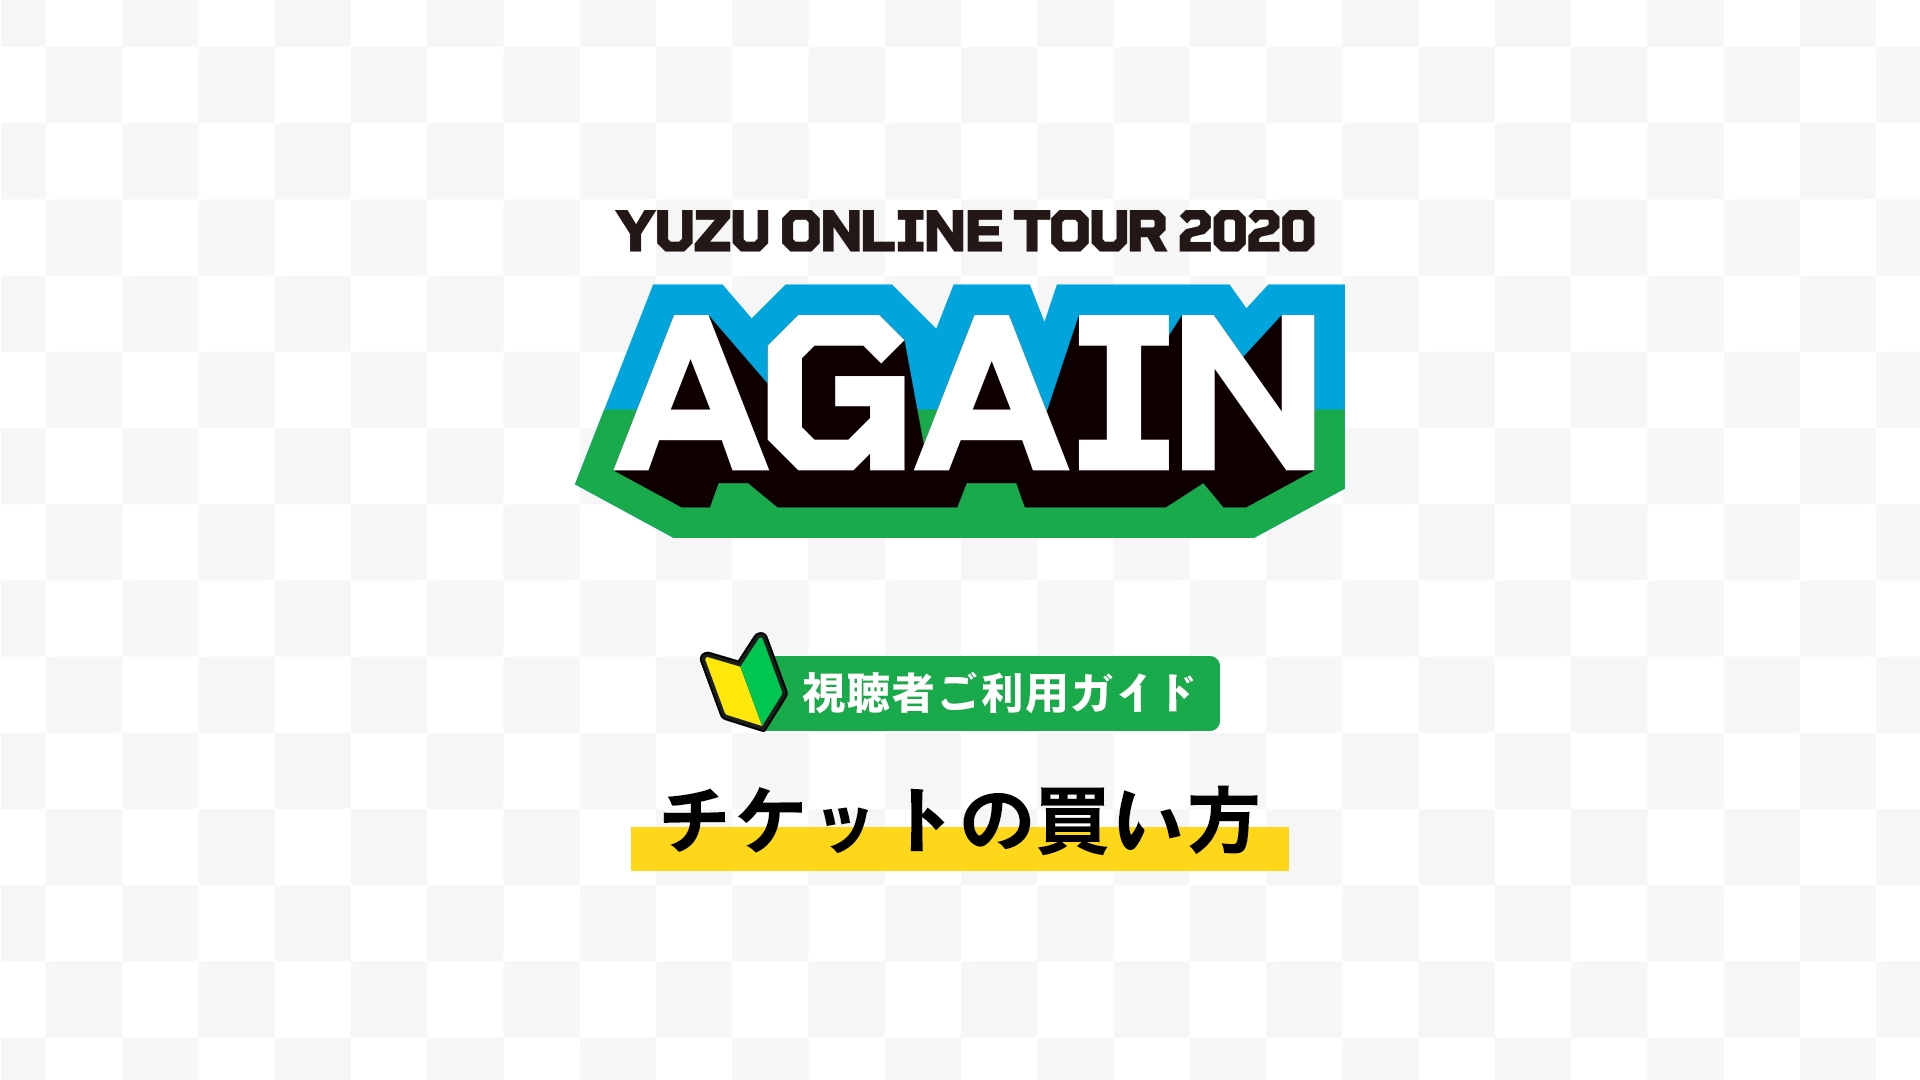 ゆずオンラインツアー 『YUZU ONLINE TOUR 2020 AGAIN』購入 